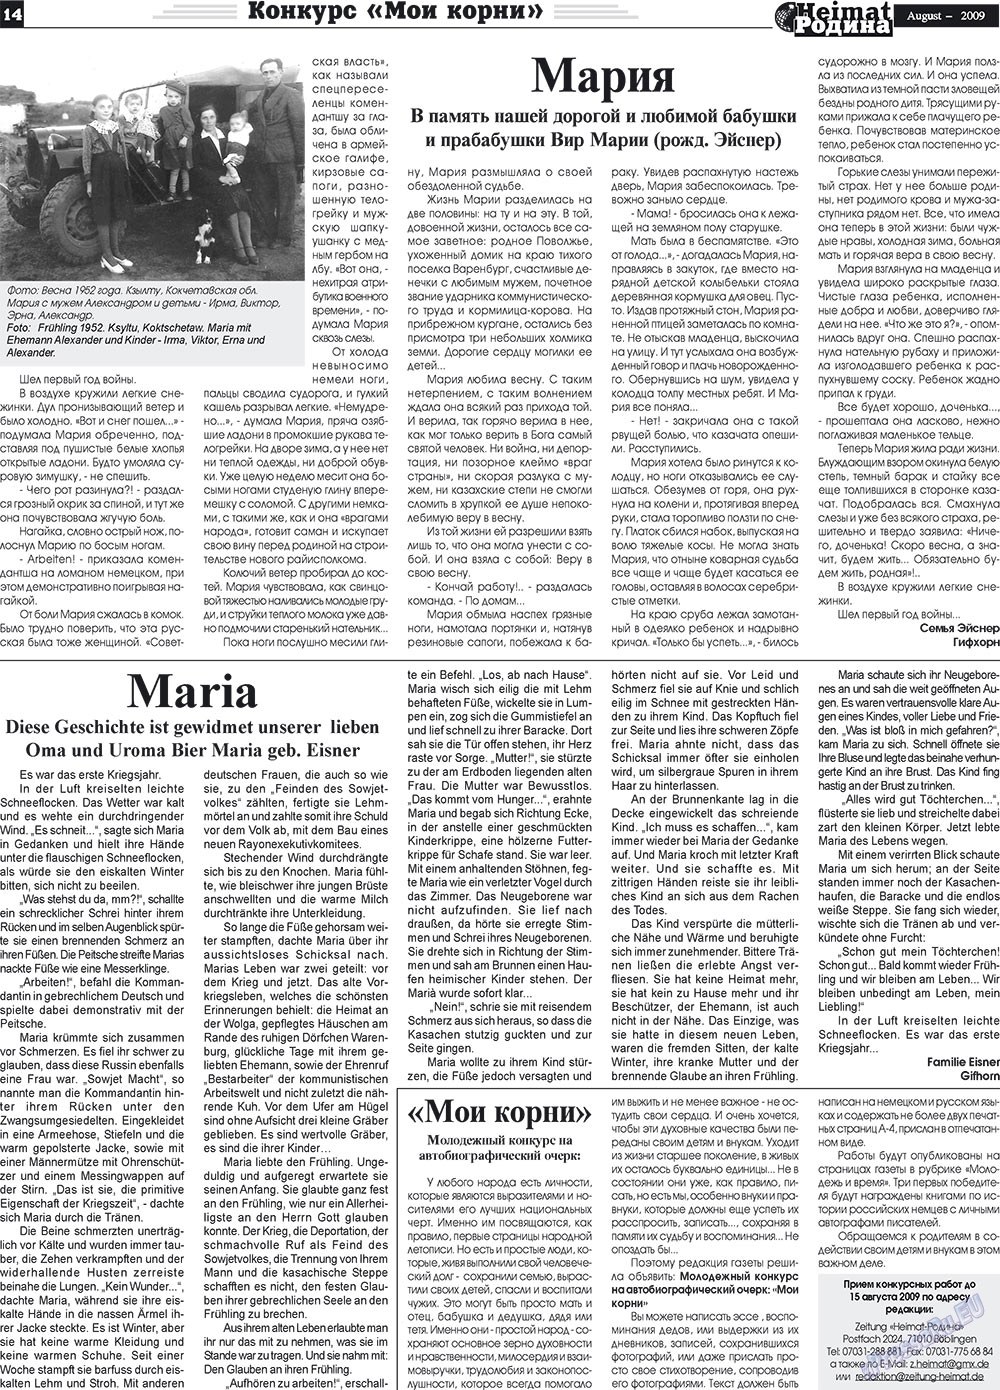 Heimat-Родина (газета). 2009 год, номер 8, стр. 14